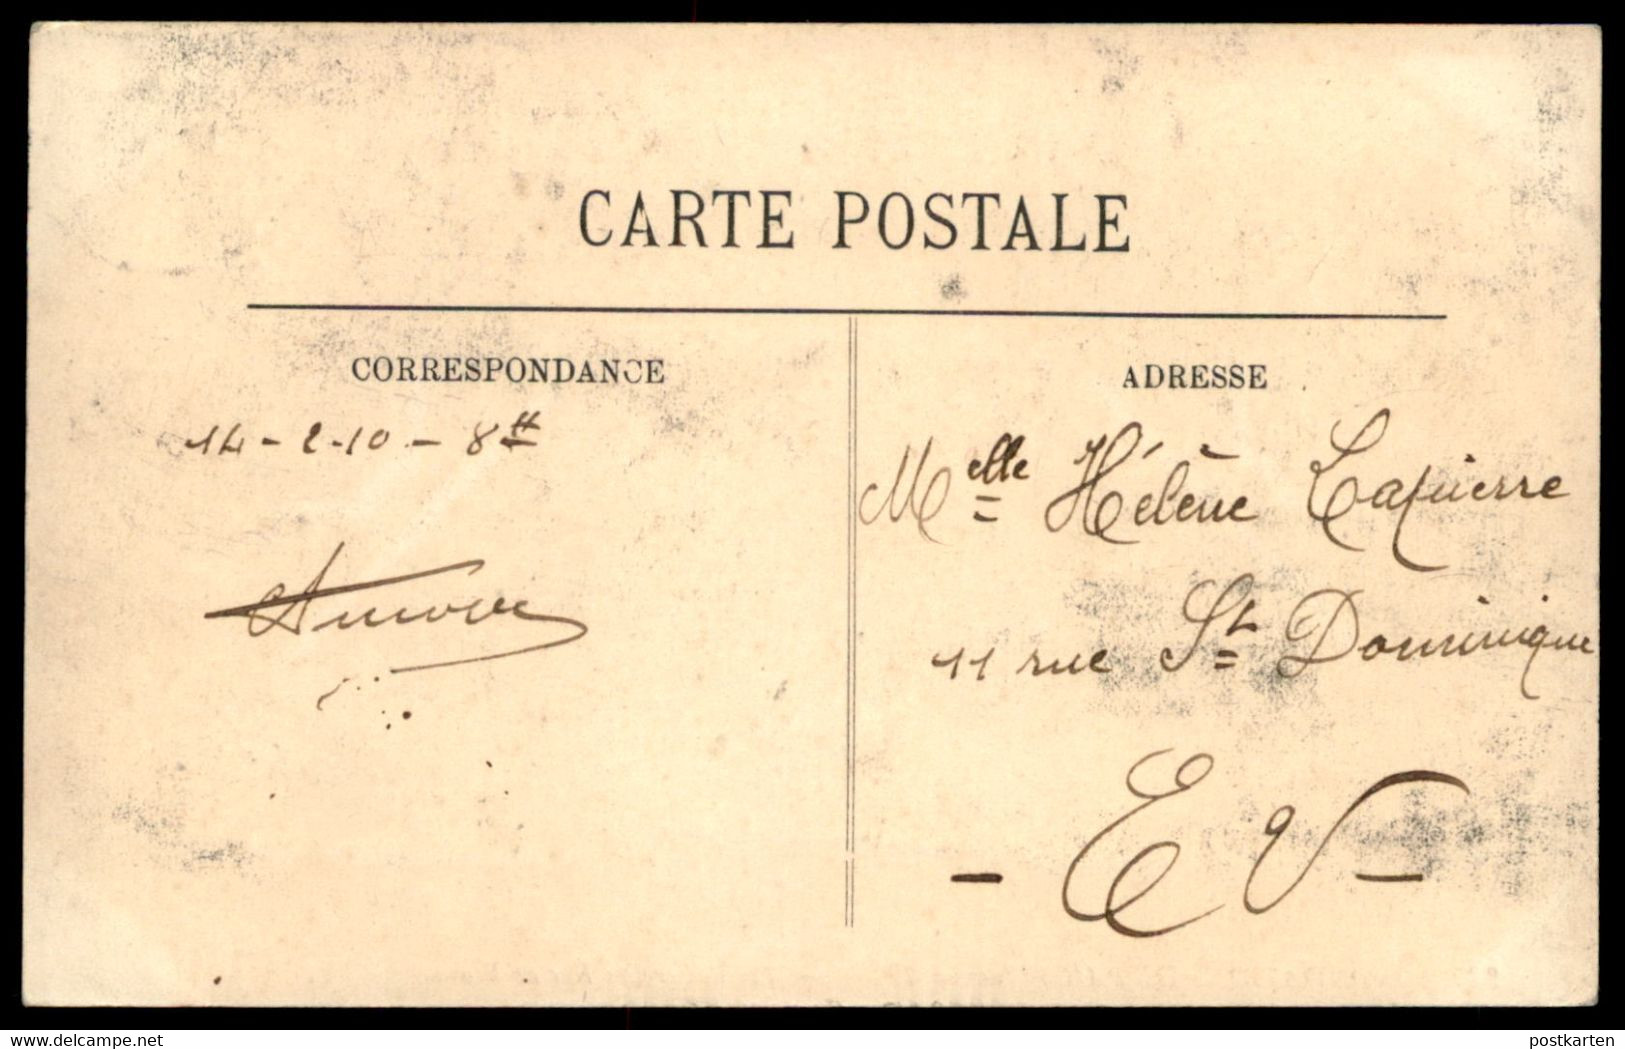 ALTE POSTKARTE PARIS HOCHWASSER 1910 RUE DE BEAUNE Flut Flood Inondations Crue Ansichtskarte Postcard Cpa AK - Inondations